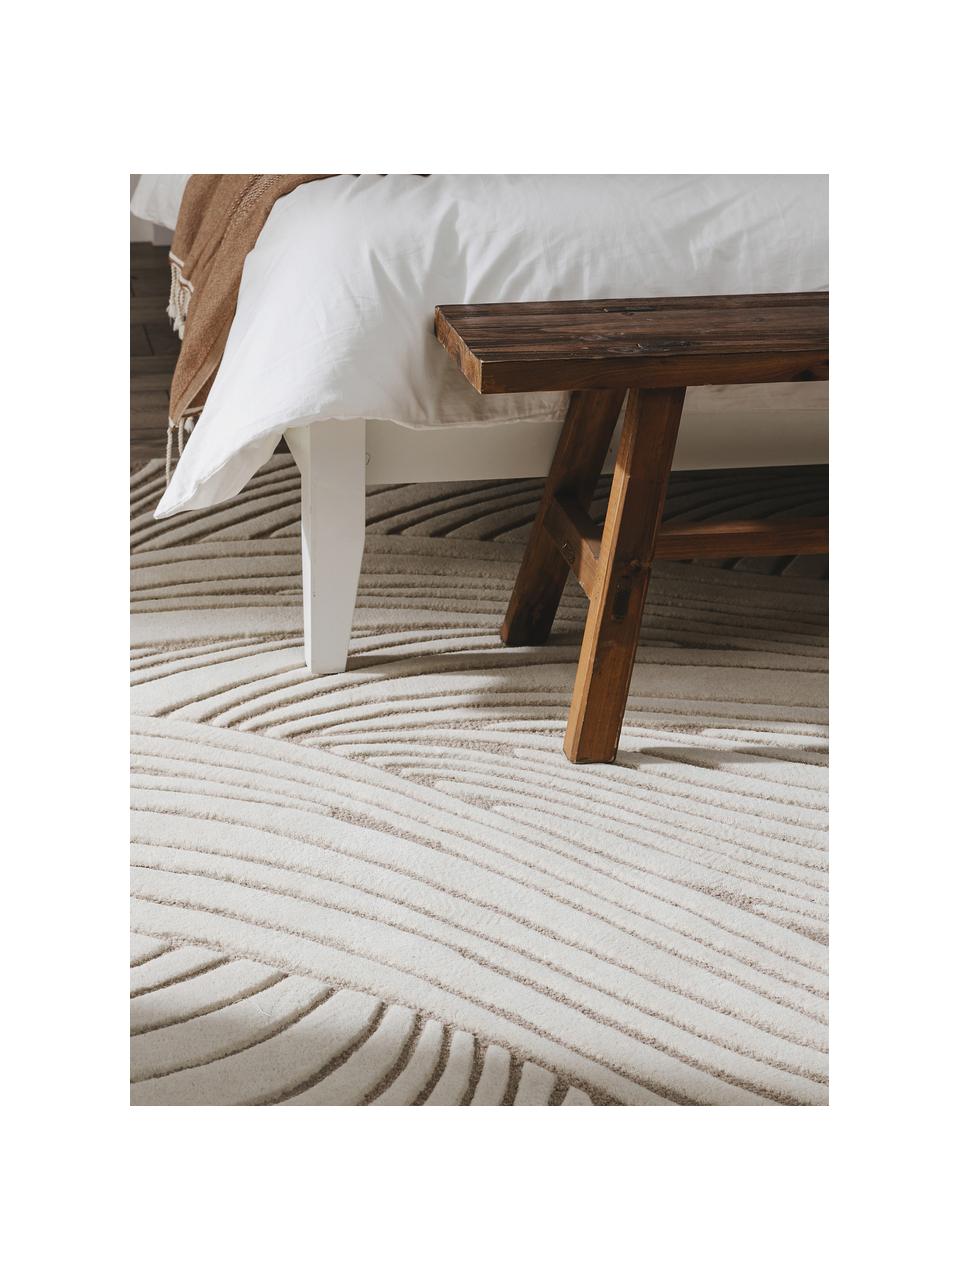 Ručne tuftovaný vlnený koberec Tess, 100 % vlna

V prvých týždňoch používania môžu vlnené koberce uvoľňovať vlákna, tento jav zmizne po niekoľkých týždňoch používania, Svetlobéžová, sivobéžová, Ø 120 x V 170 cm (veľkosť XL)